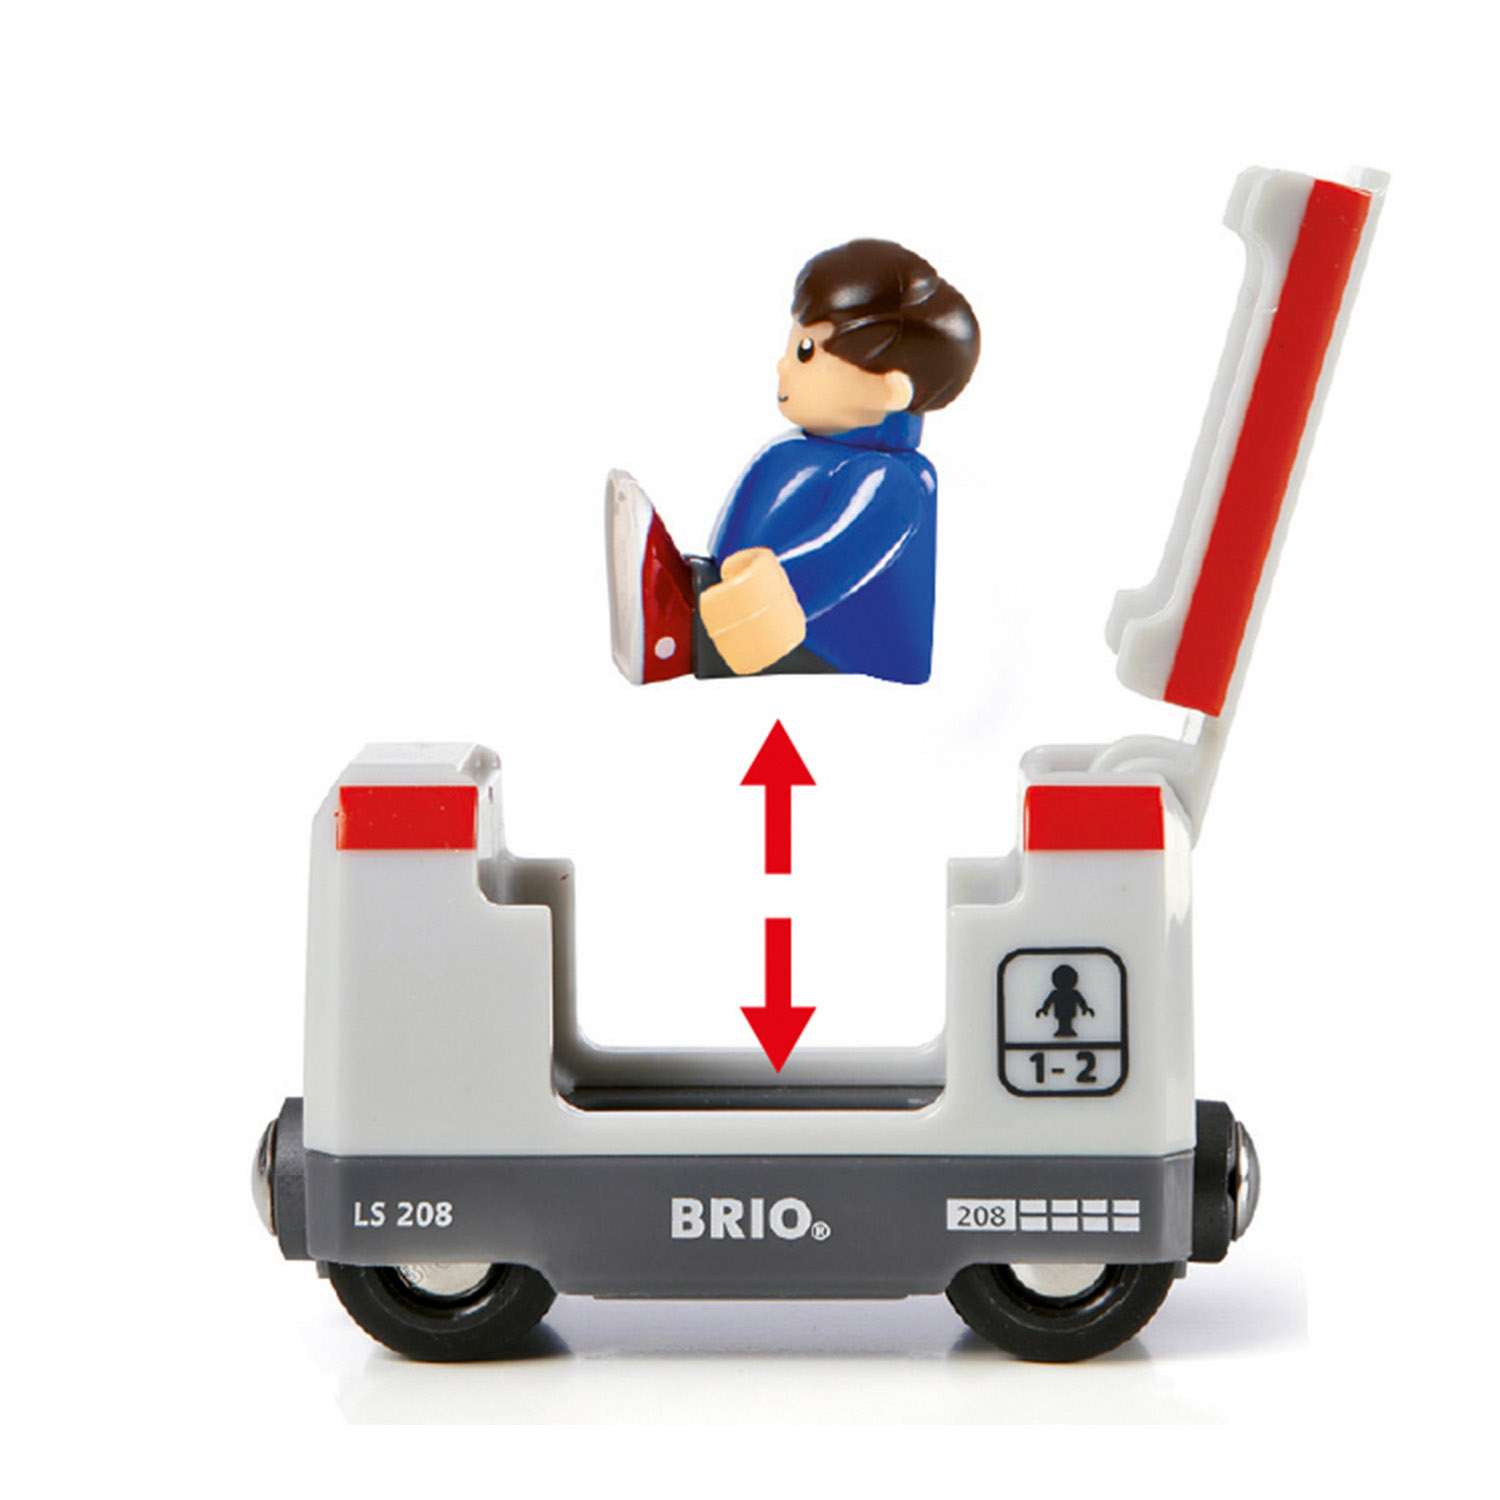 Игровой набор BRIO Стартовый для построения - фото 7